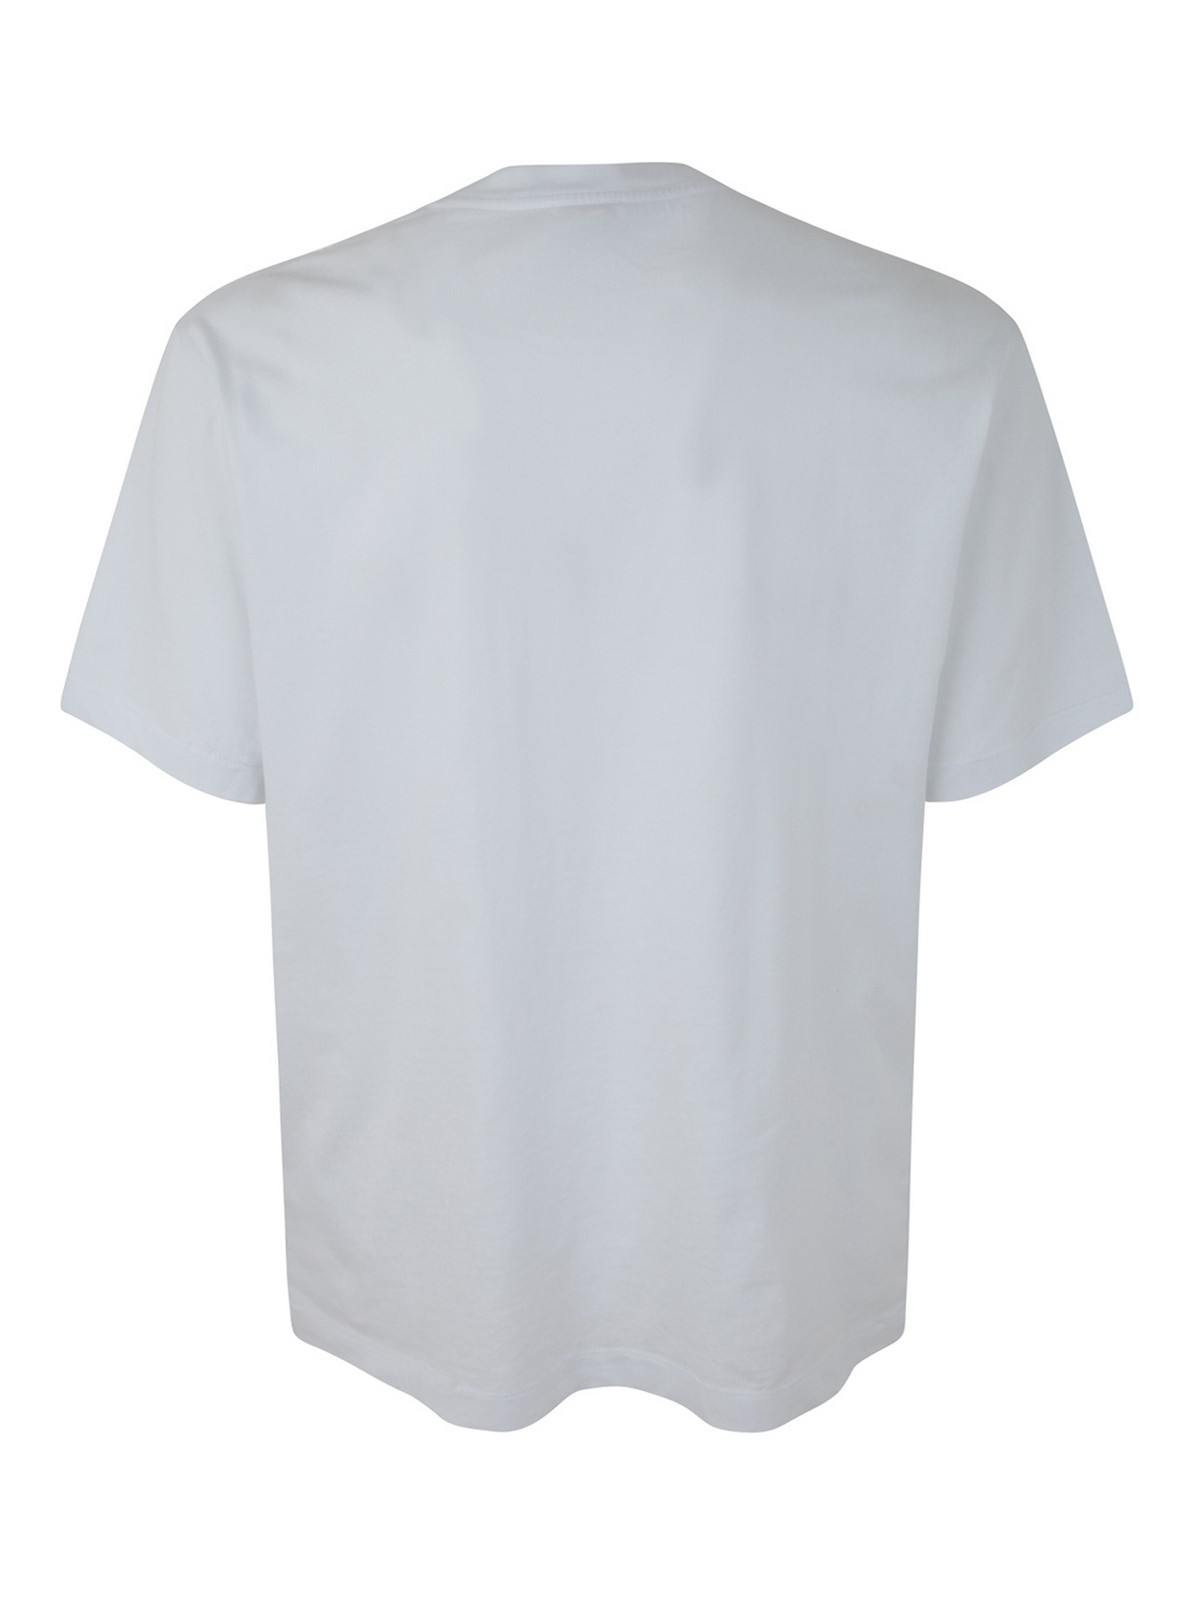 Kenzo BOKE FLOWER Crest Men's T-Shirt White FC65TS4124SG-01